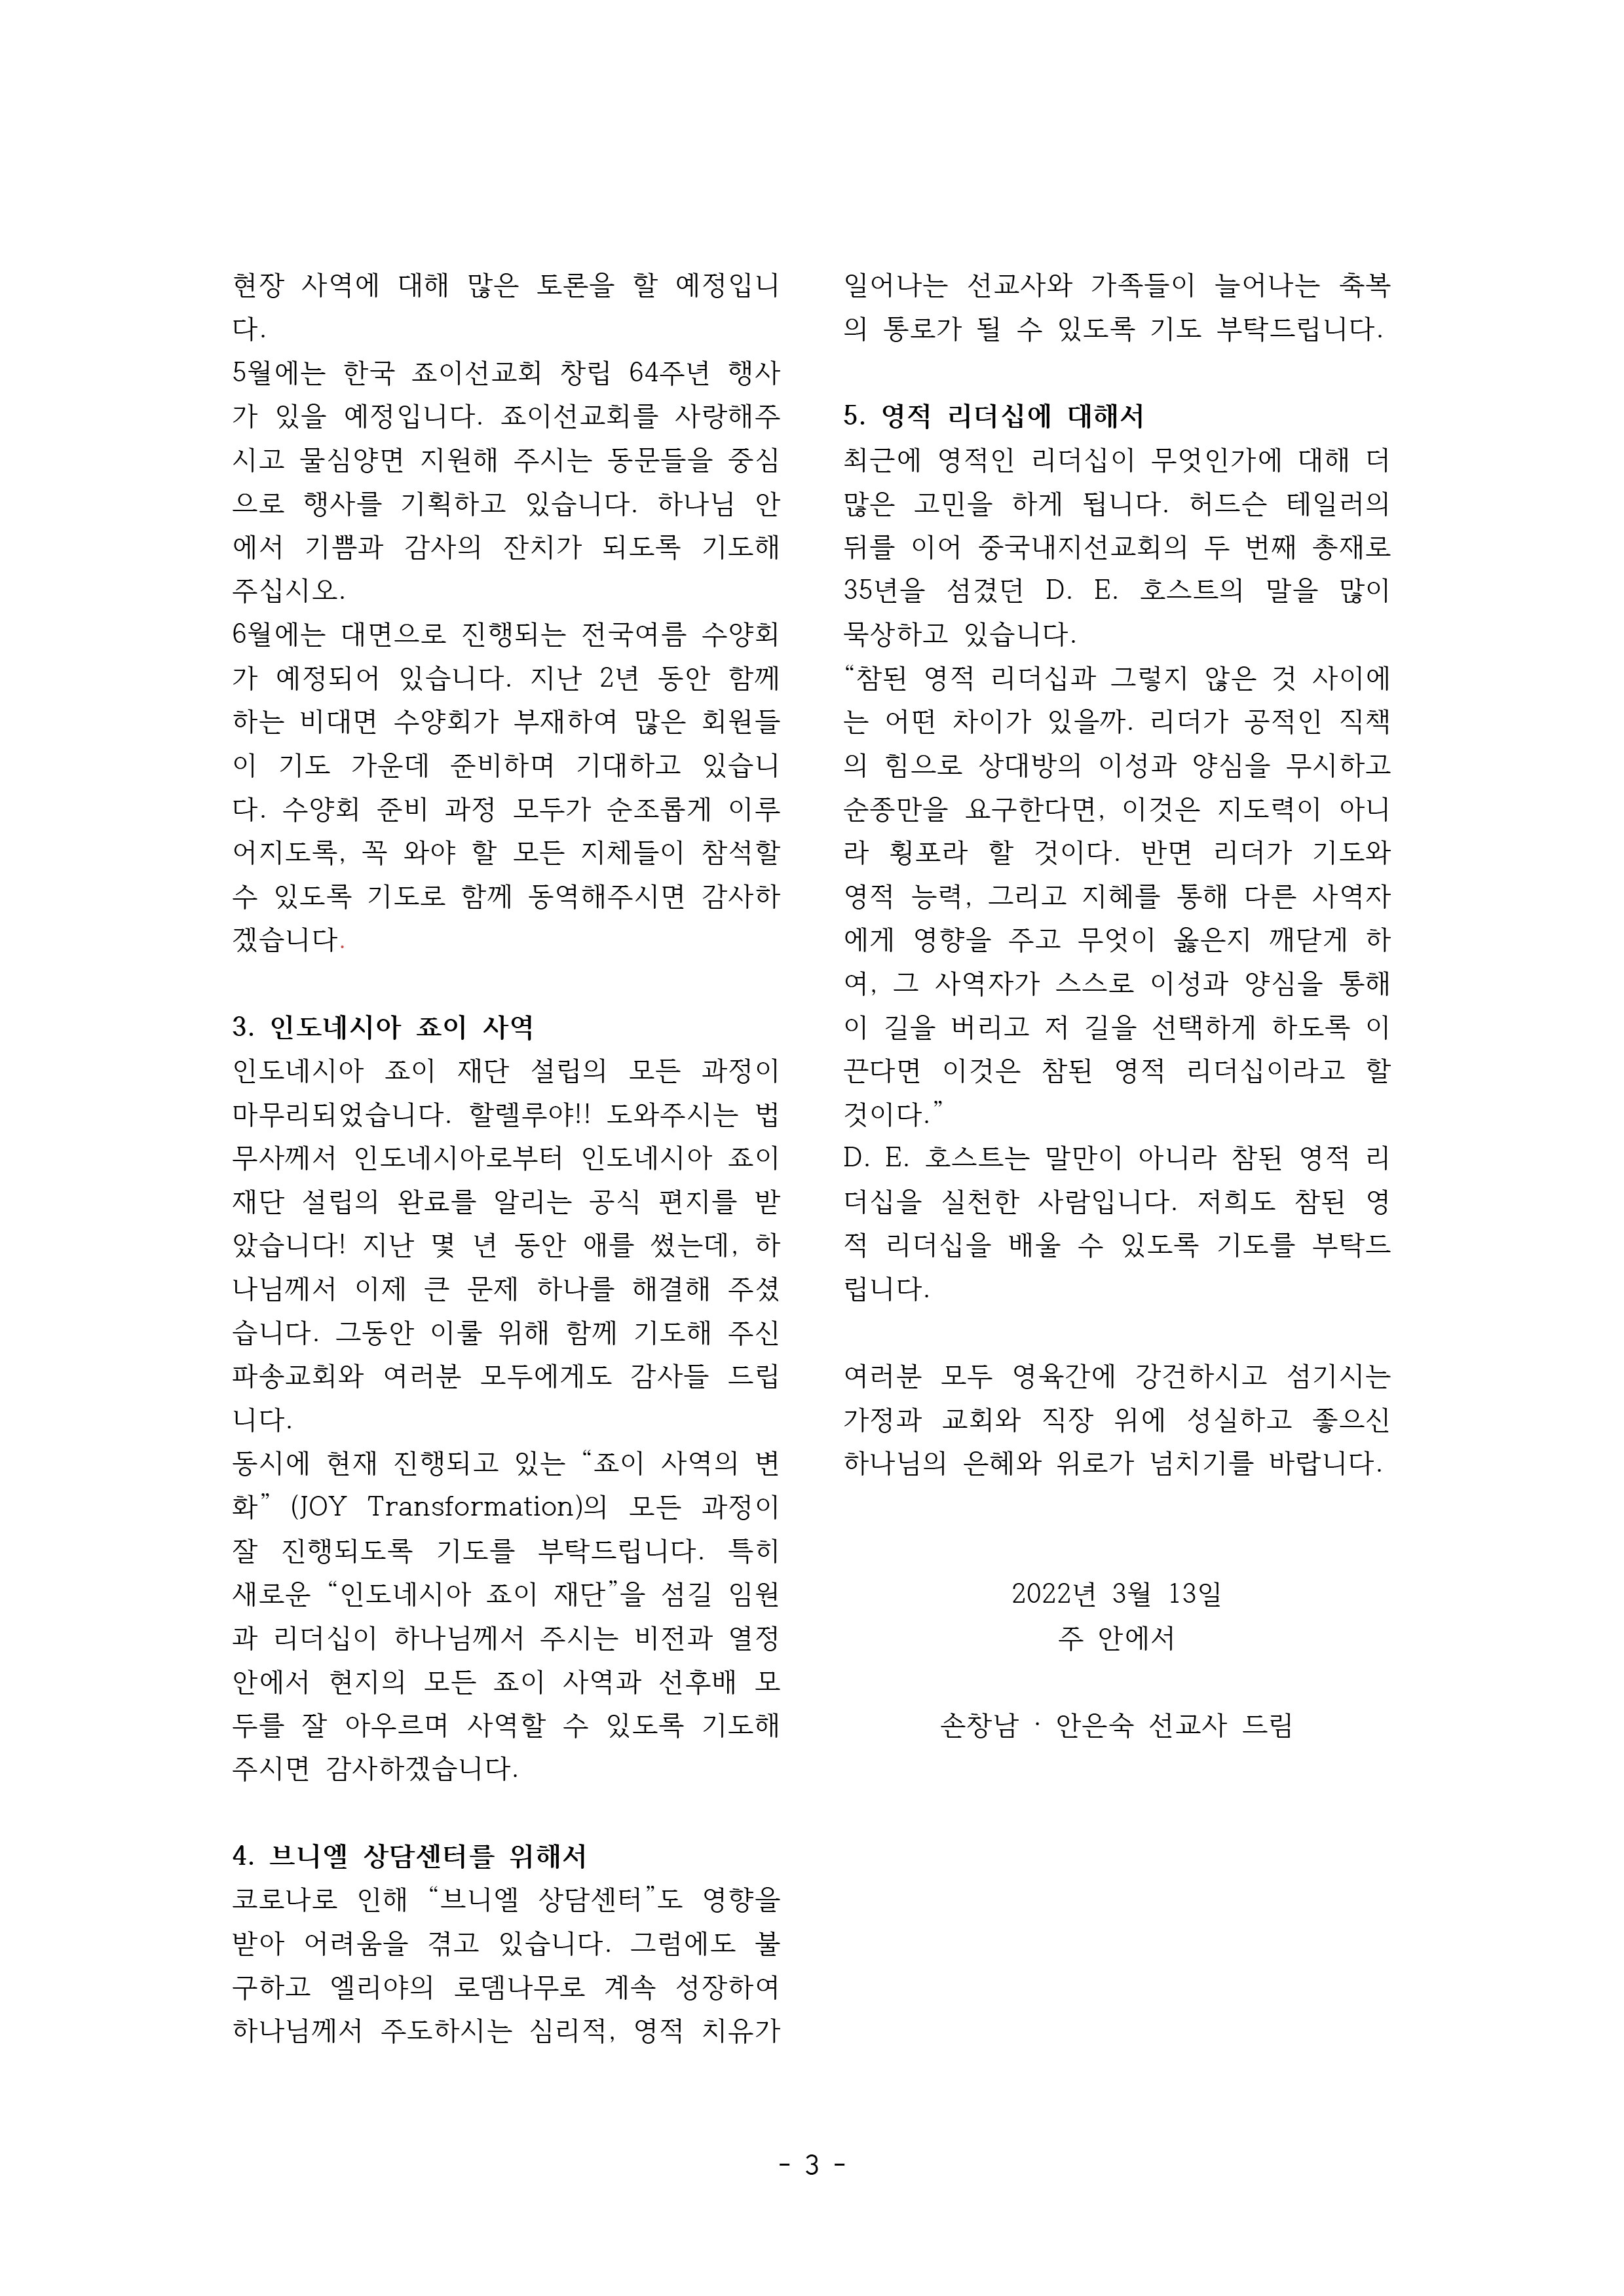 2022년-3월-손창남안은숙기도편지-3.jpg